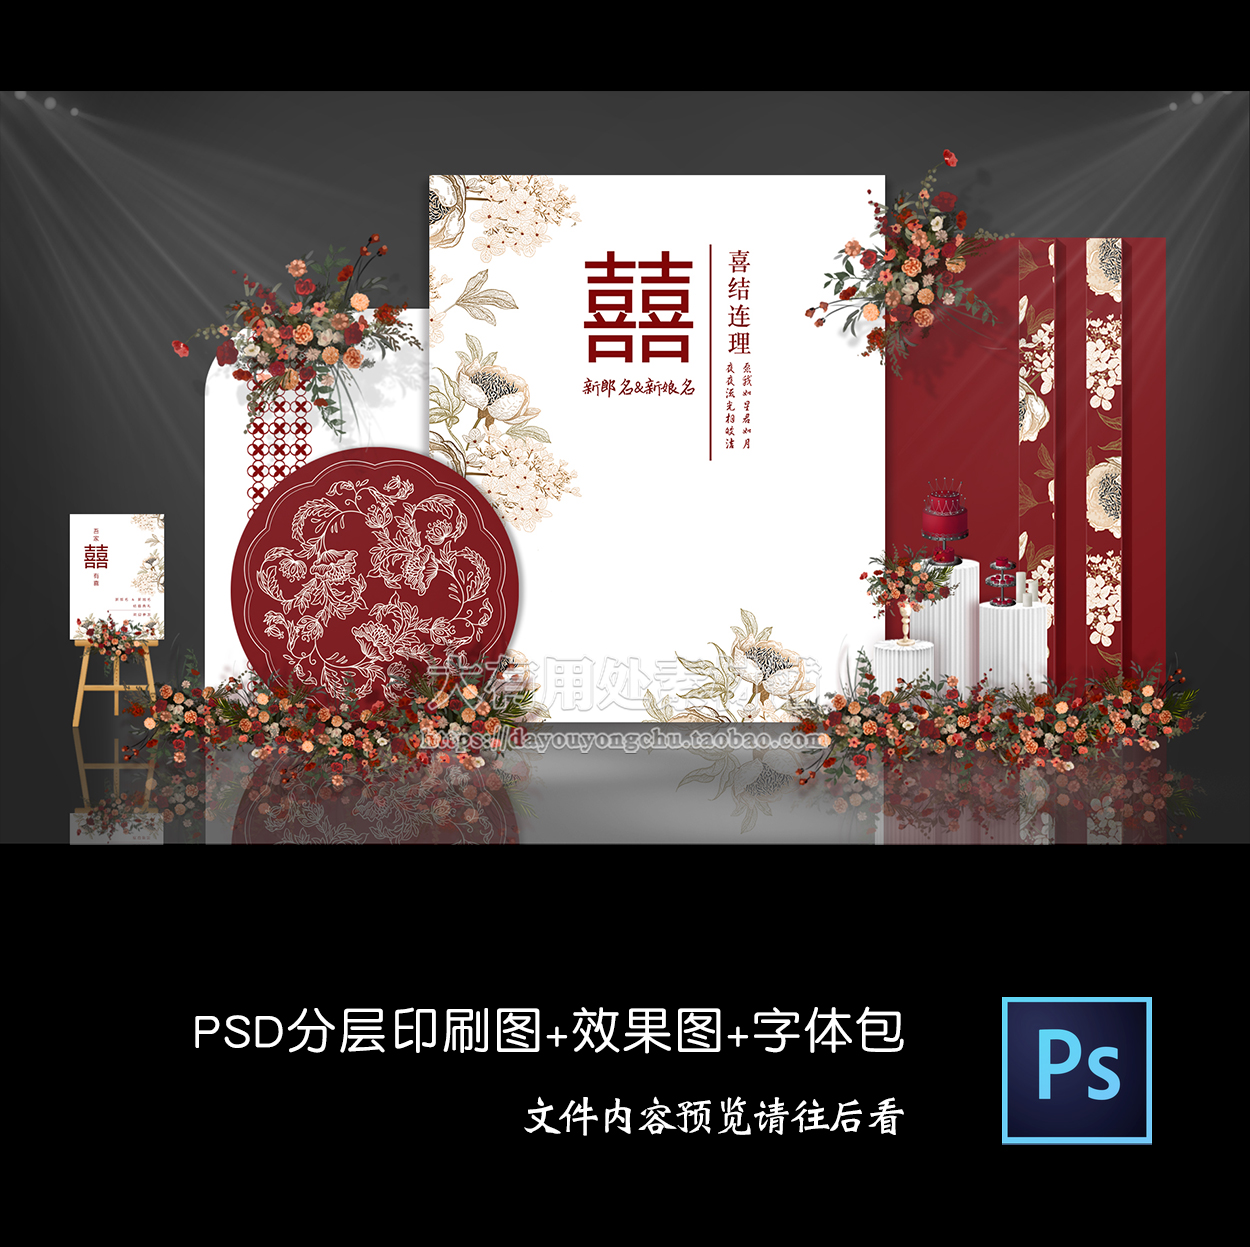 红白色新中式婚礼背景墙设计效果图 婚庆迎宾签到区KT布置PSD模板